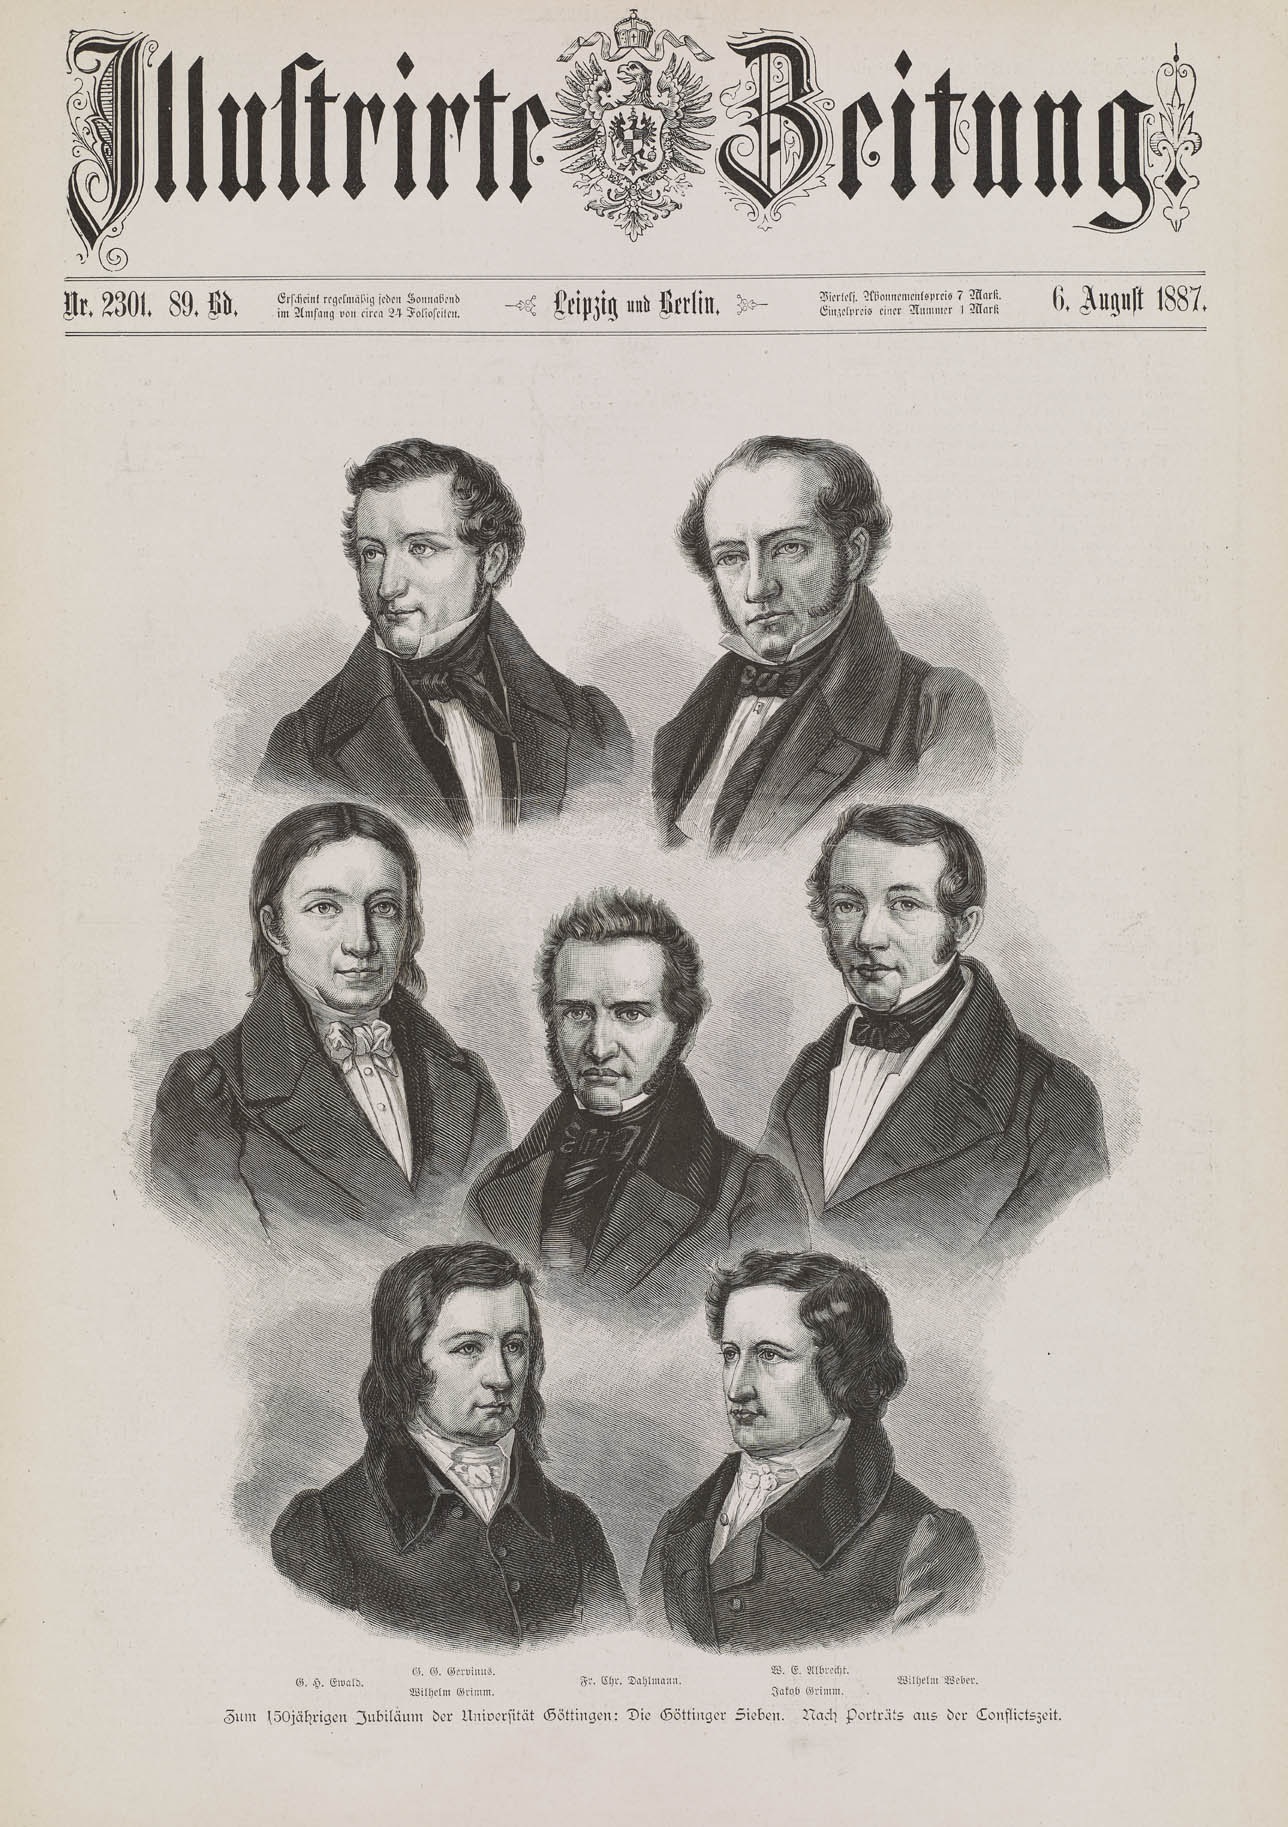 Grafik: "Die Göttinger Sieben", 1887